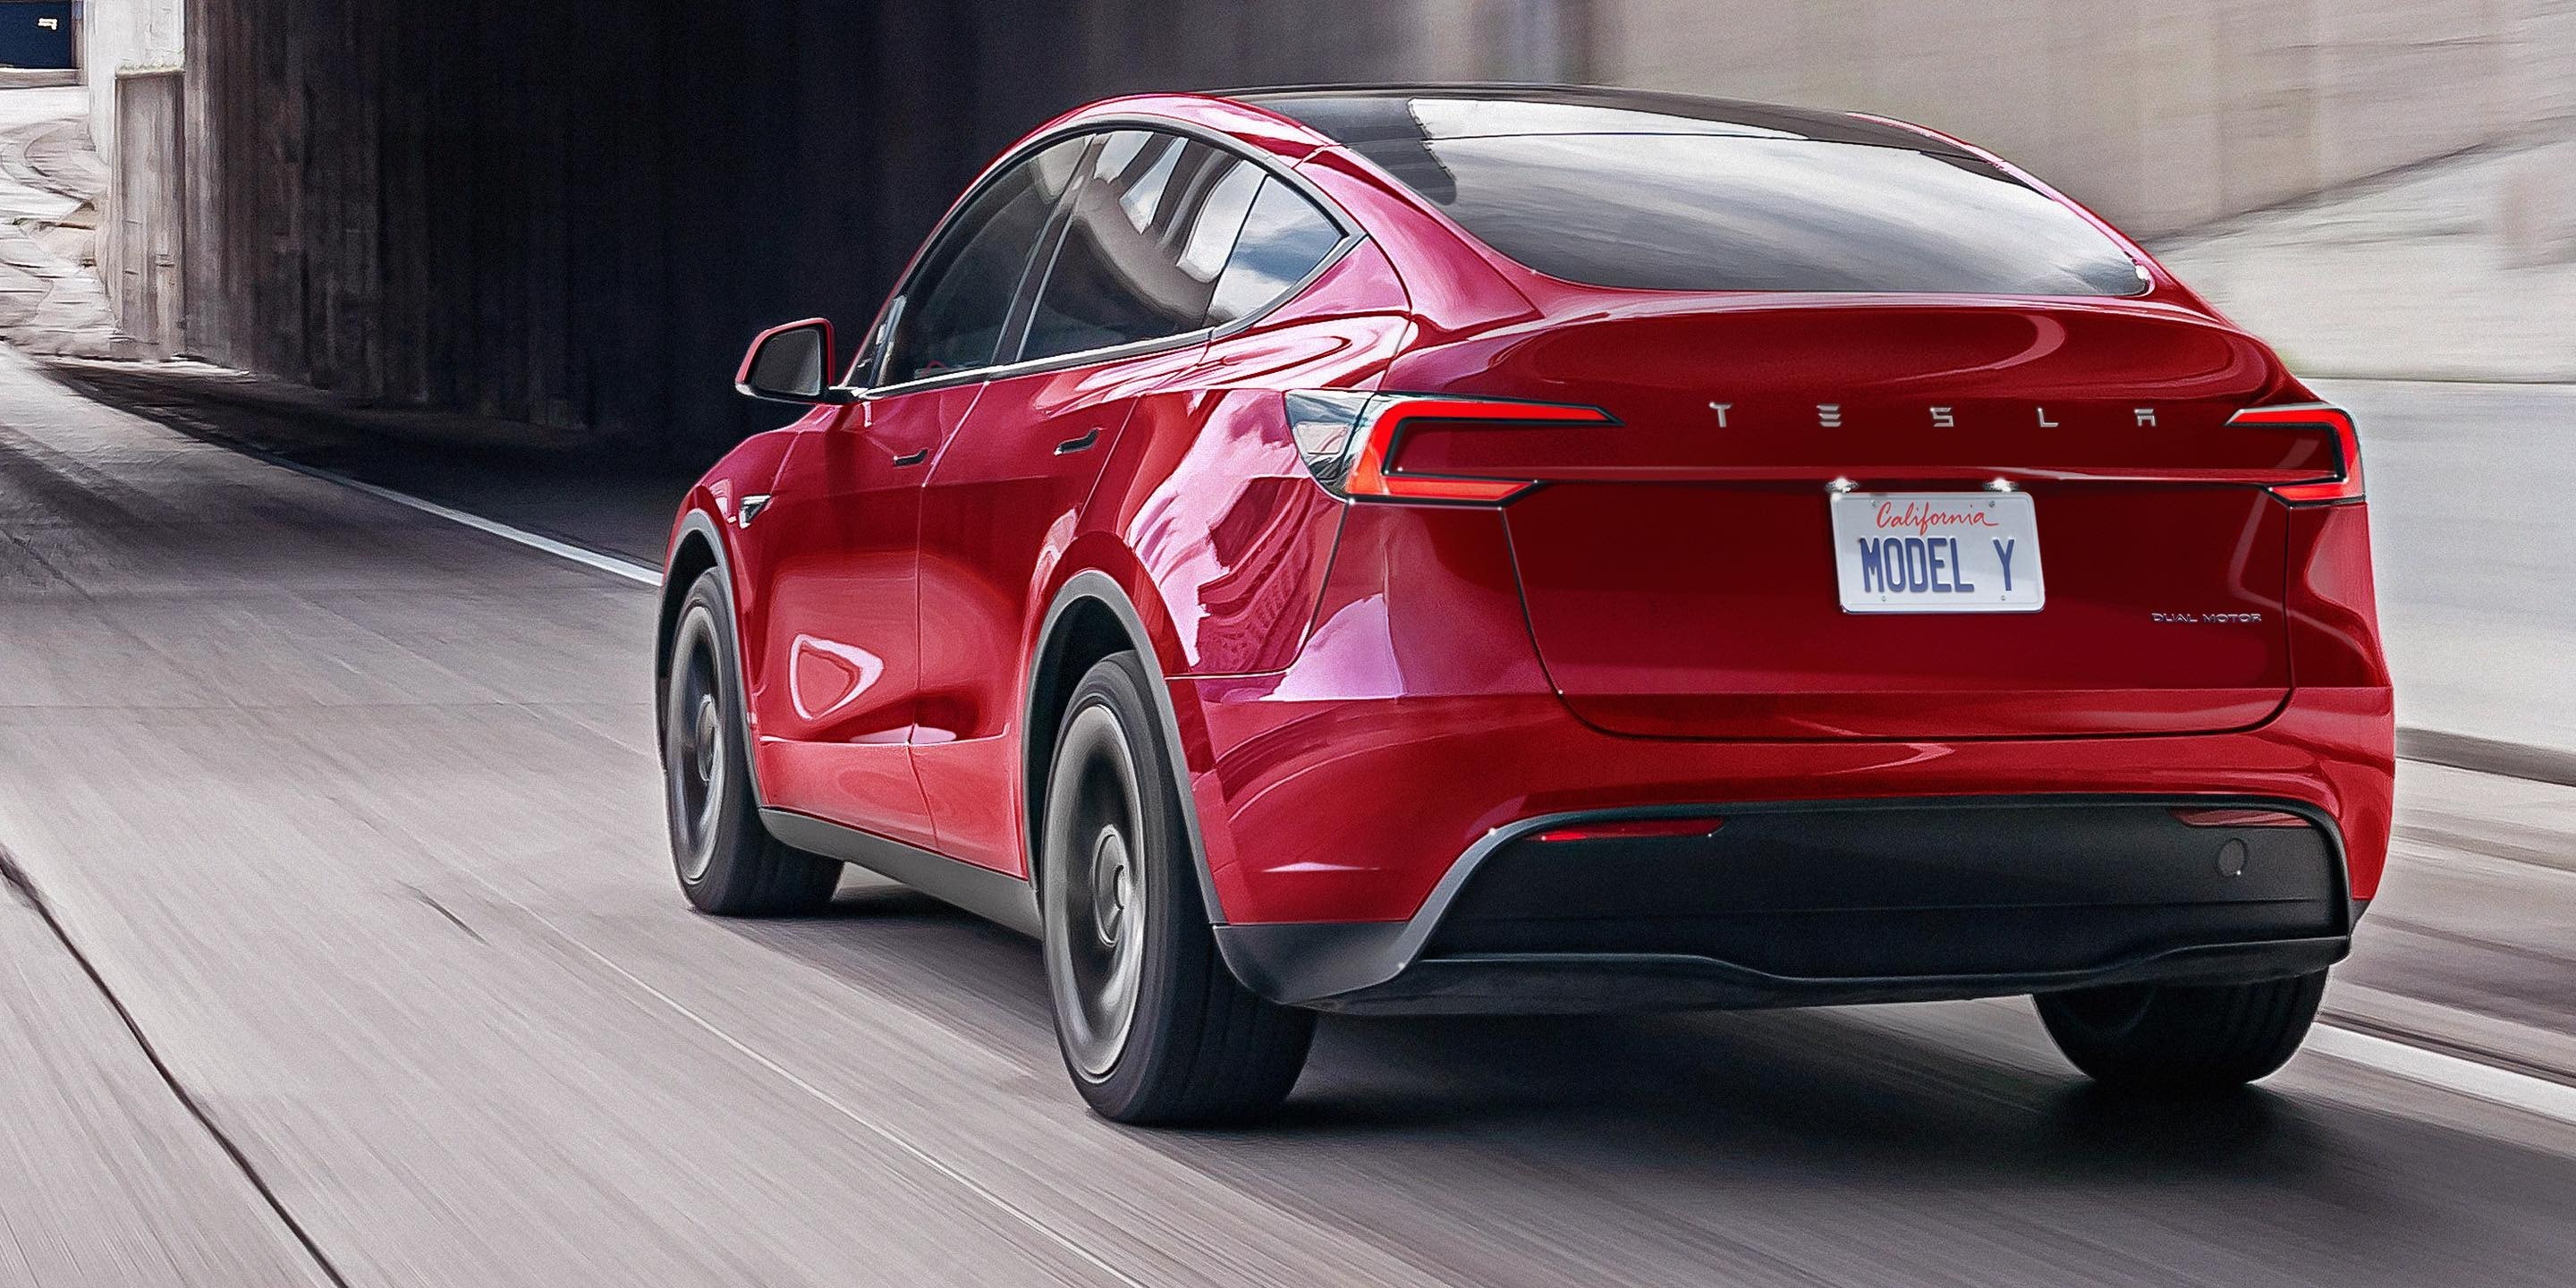 2025 Tesla Model Y Rendered Based On The Facelifted Model 3